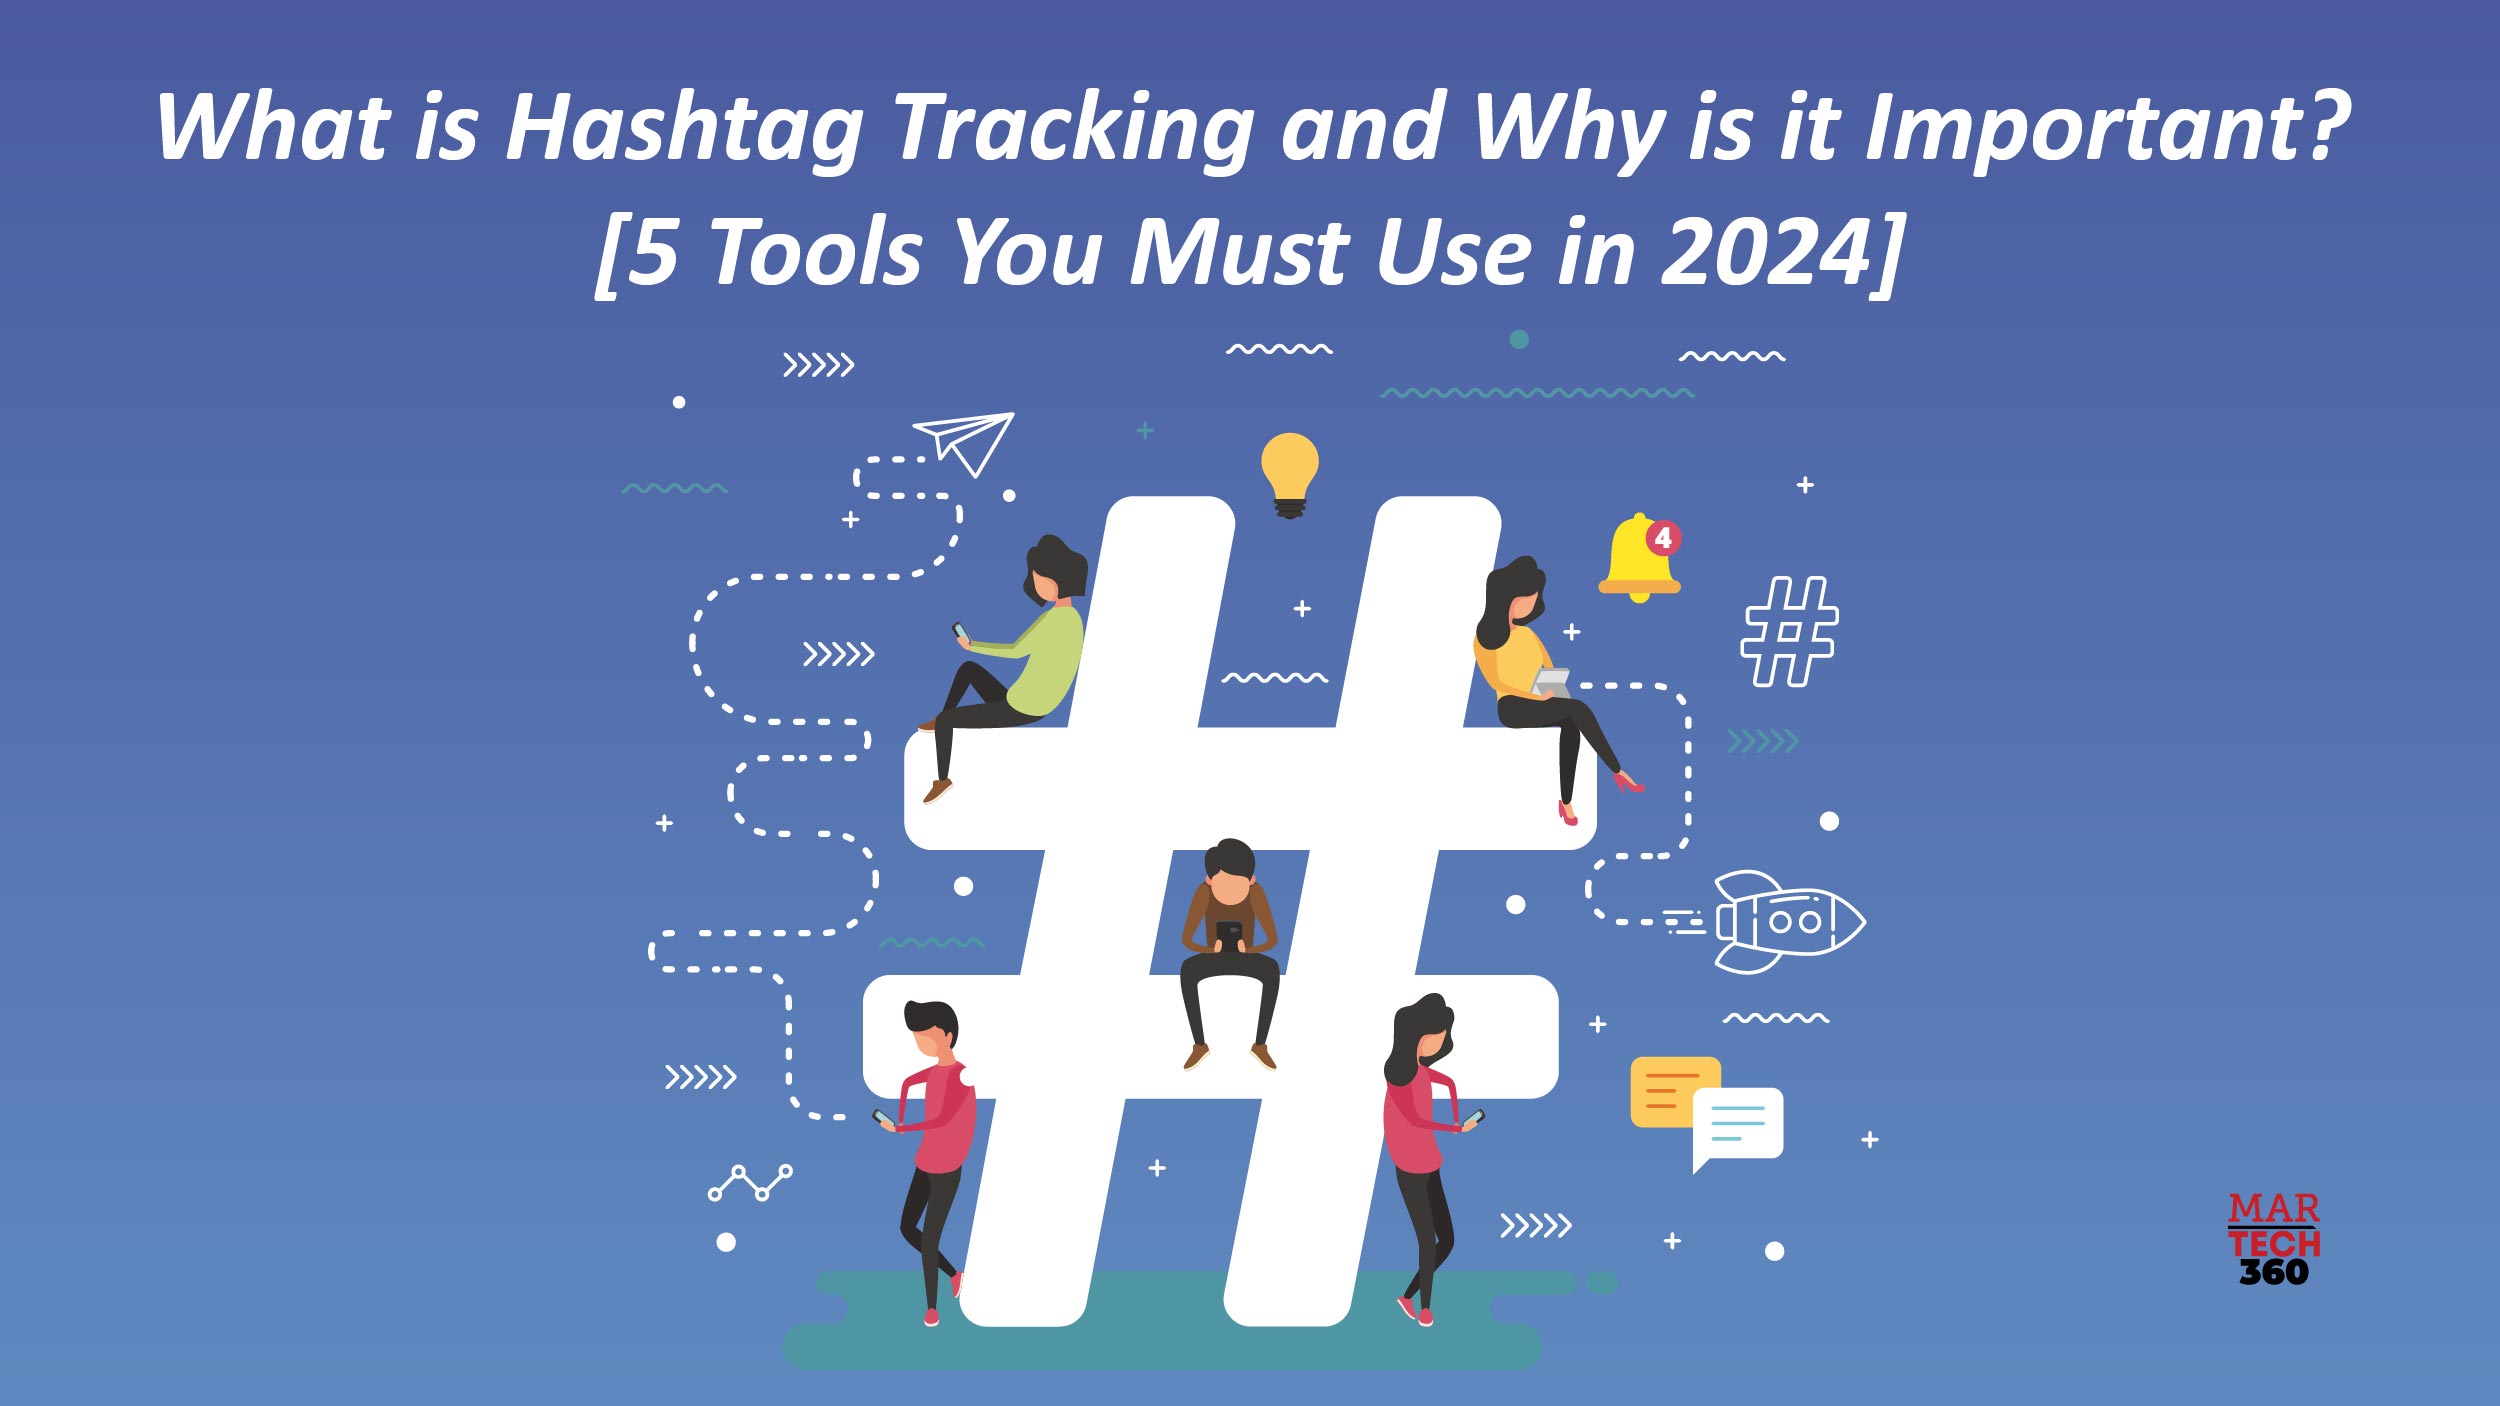 Hashtag Tracking